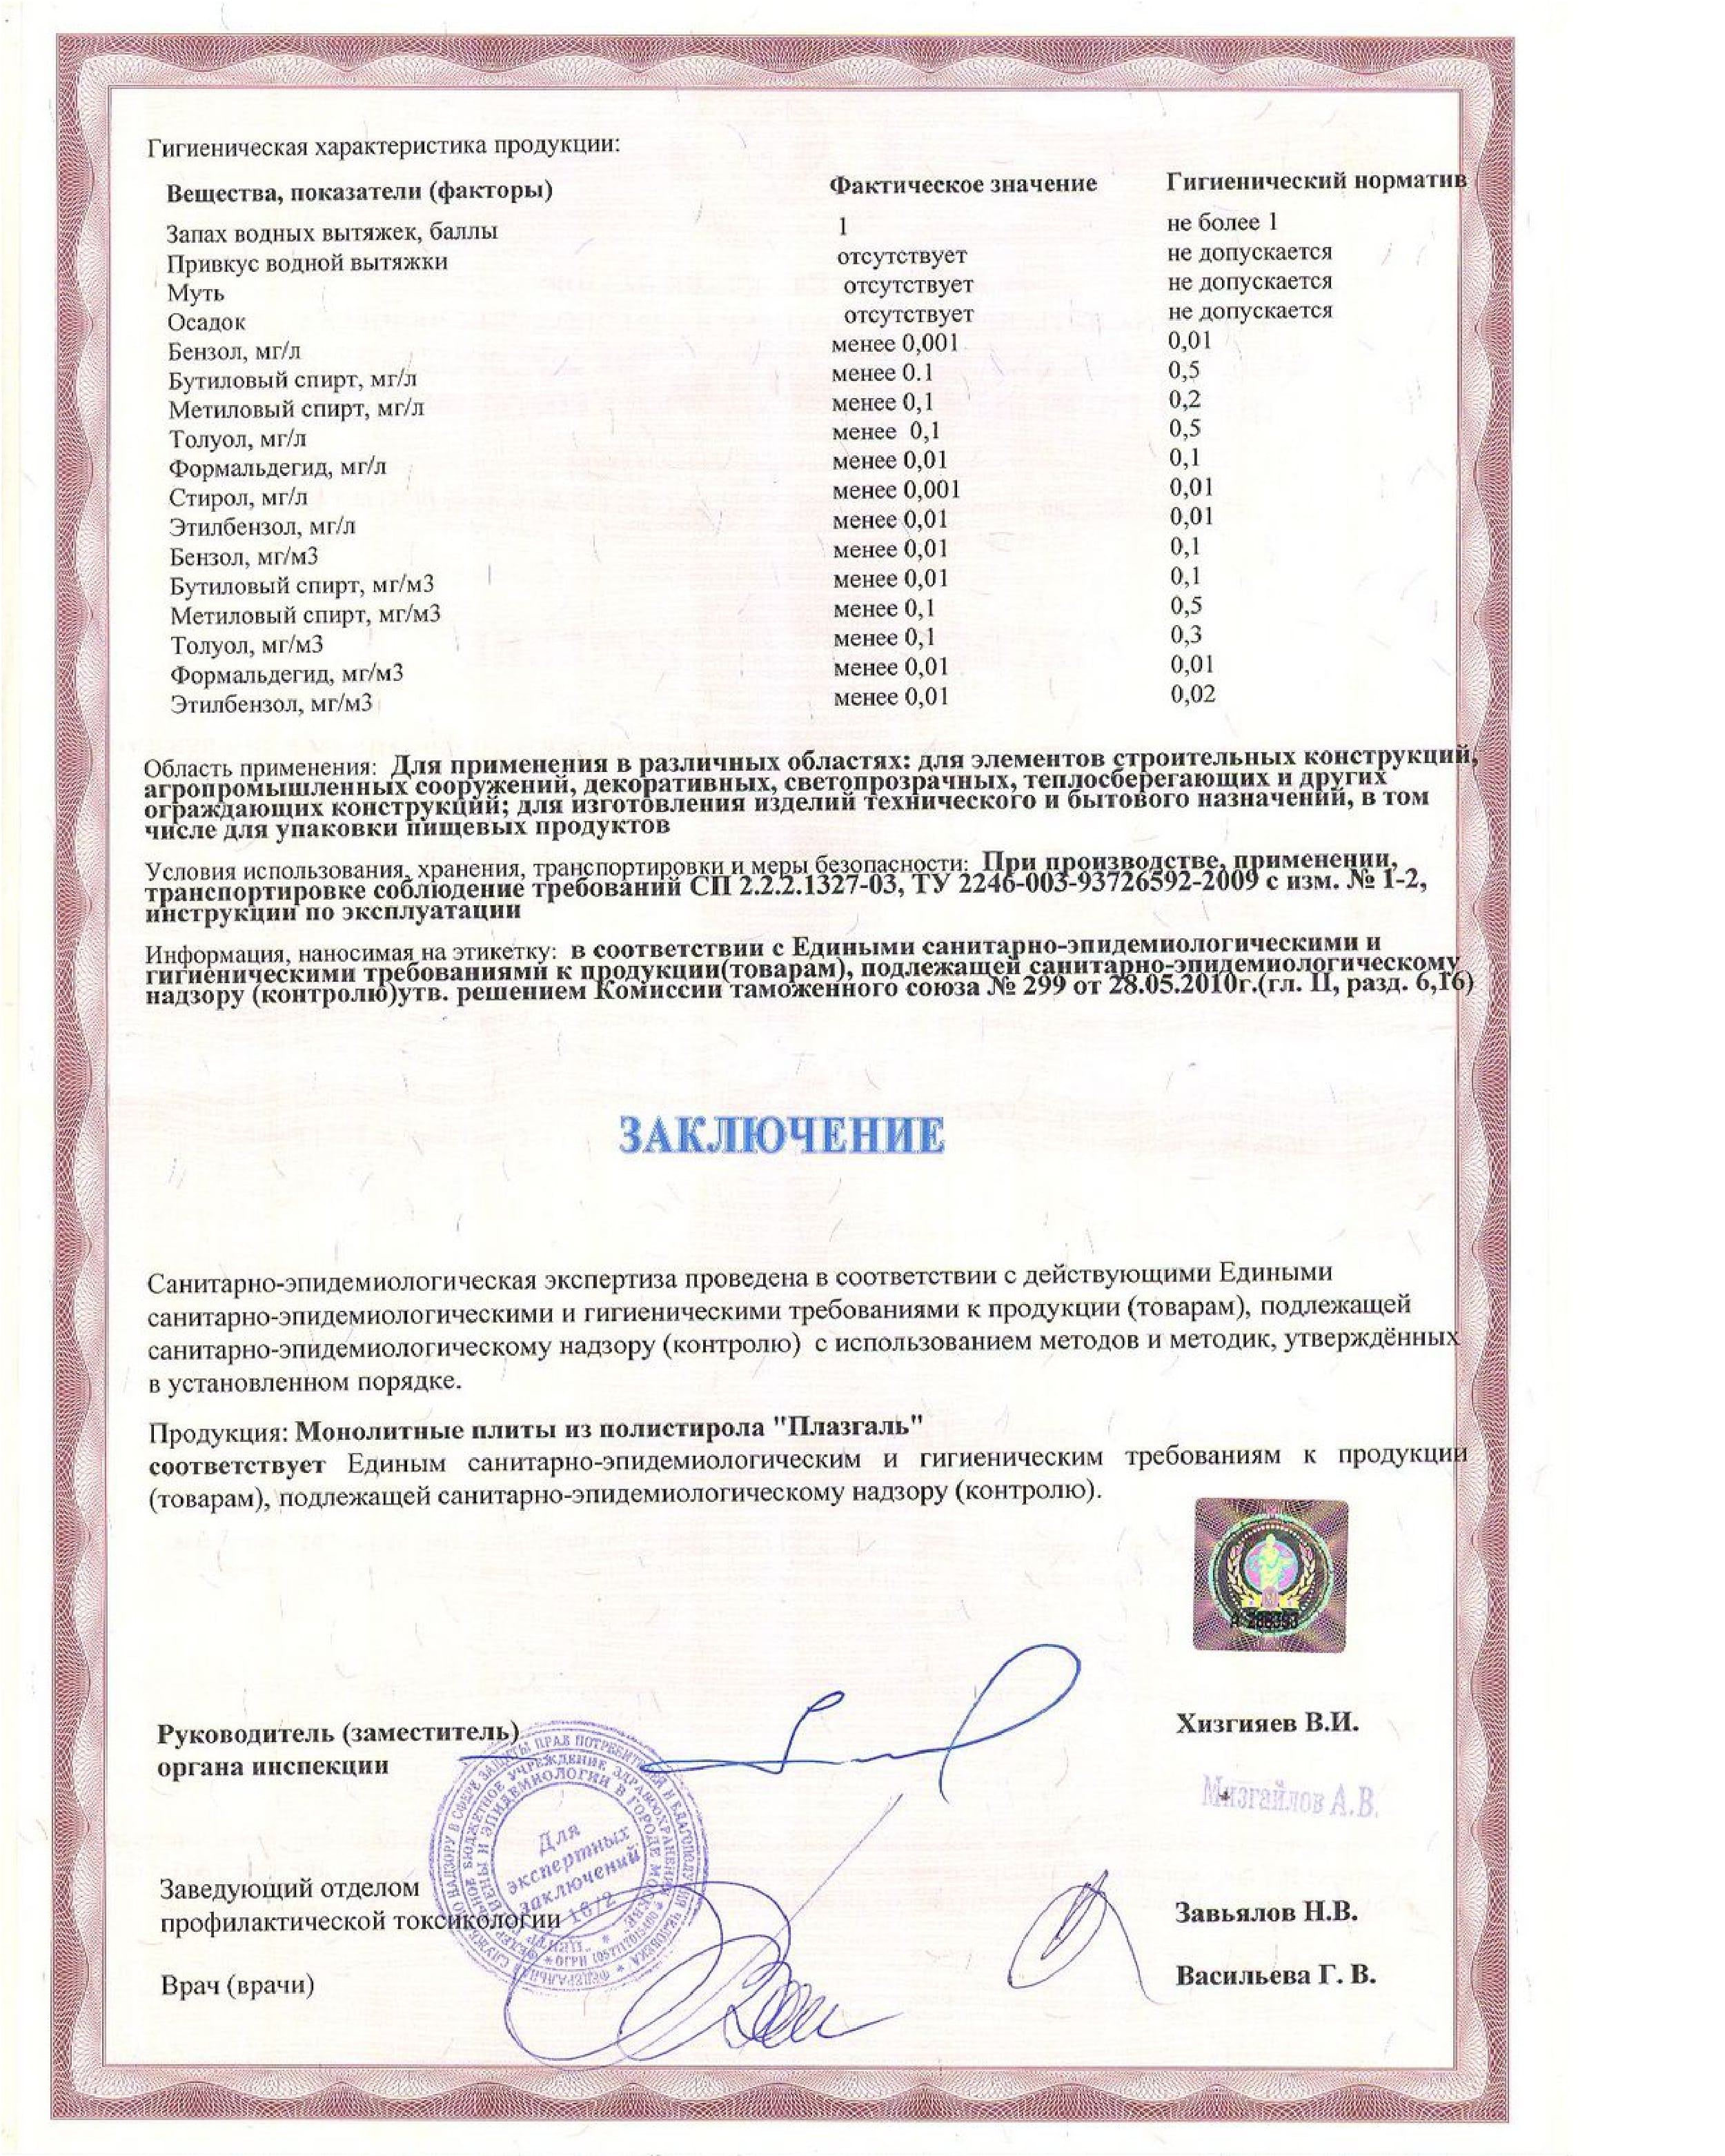 Полигаль полистирол Плазгаль гигиенический сертификат 2